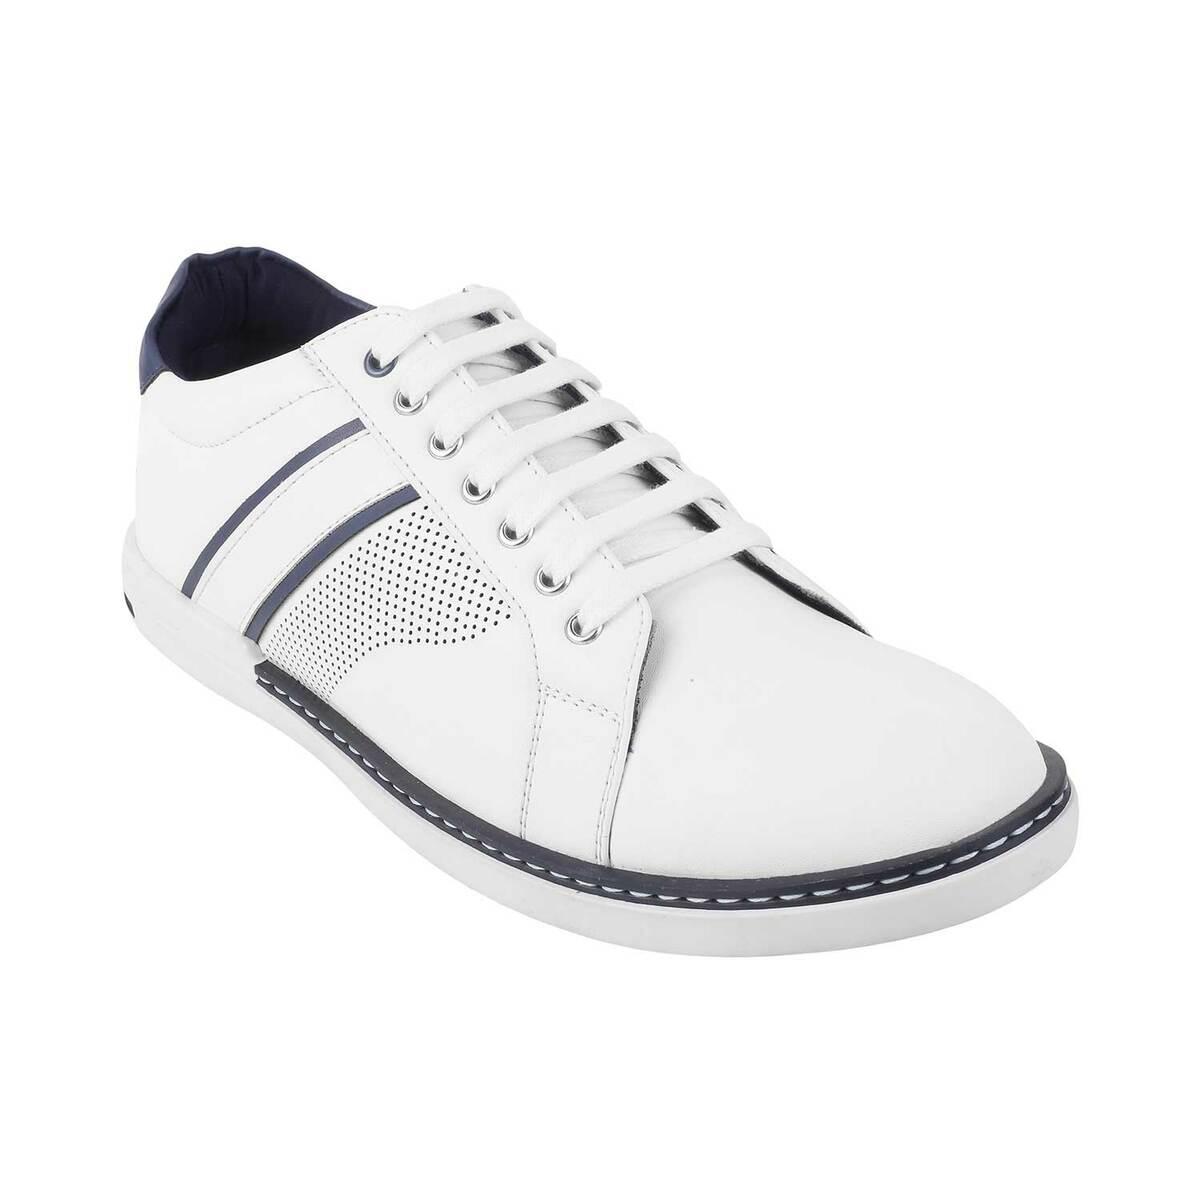 Buy Mochi Women White Casual Sneakers Online | SKU: 31-1146-16-36 – Mochi  Shoes